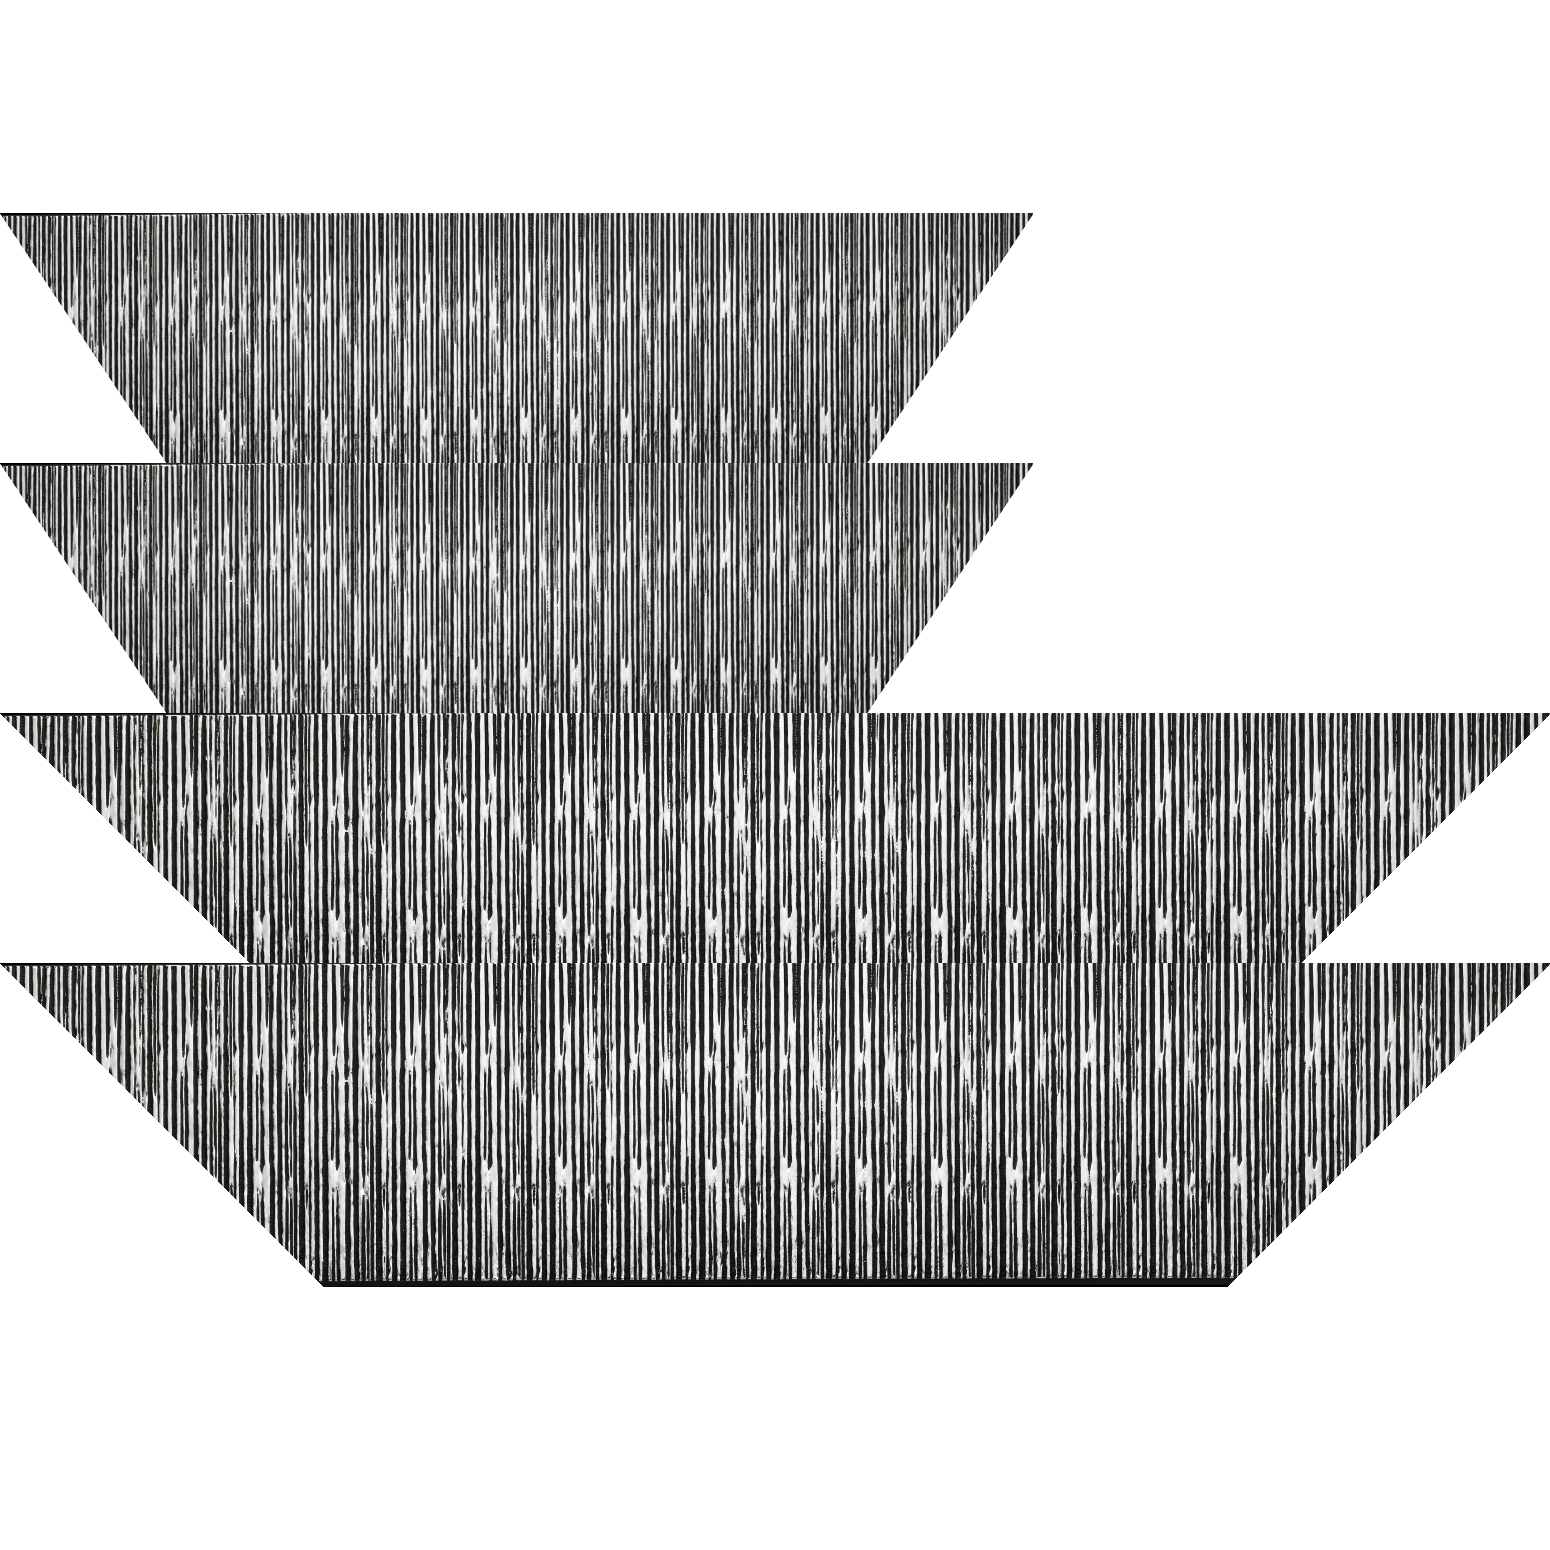 Baguette bois profil plat largeur 10.5cm couleur noir mat strié argent chromé en relief - 59.4x84.1